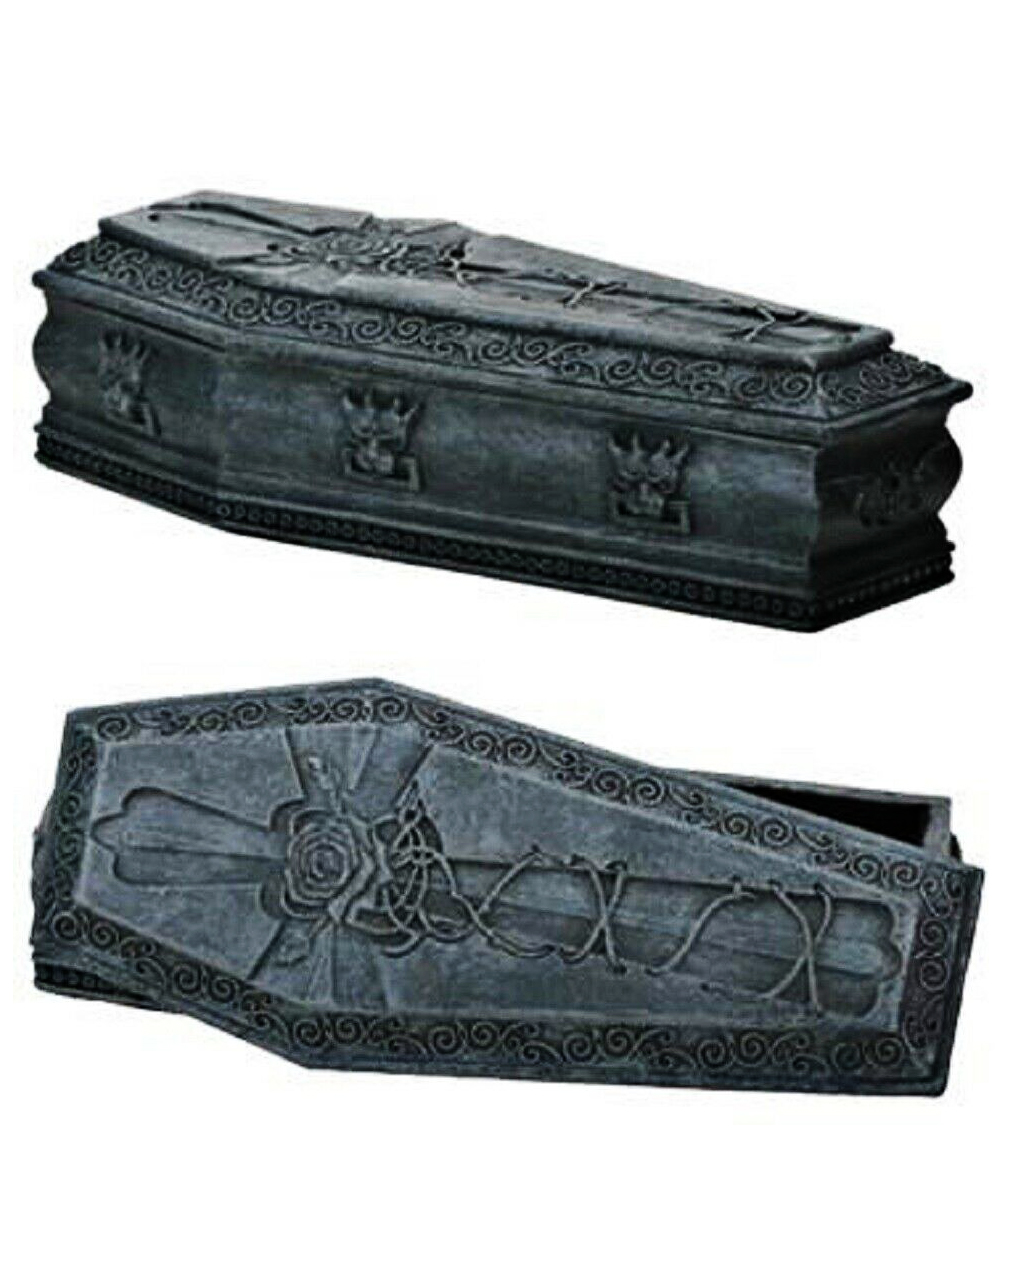 sargbox mit gargoyls und kreuz sarg schmuckkaestchen gothic deko 51541 01